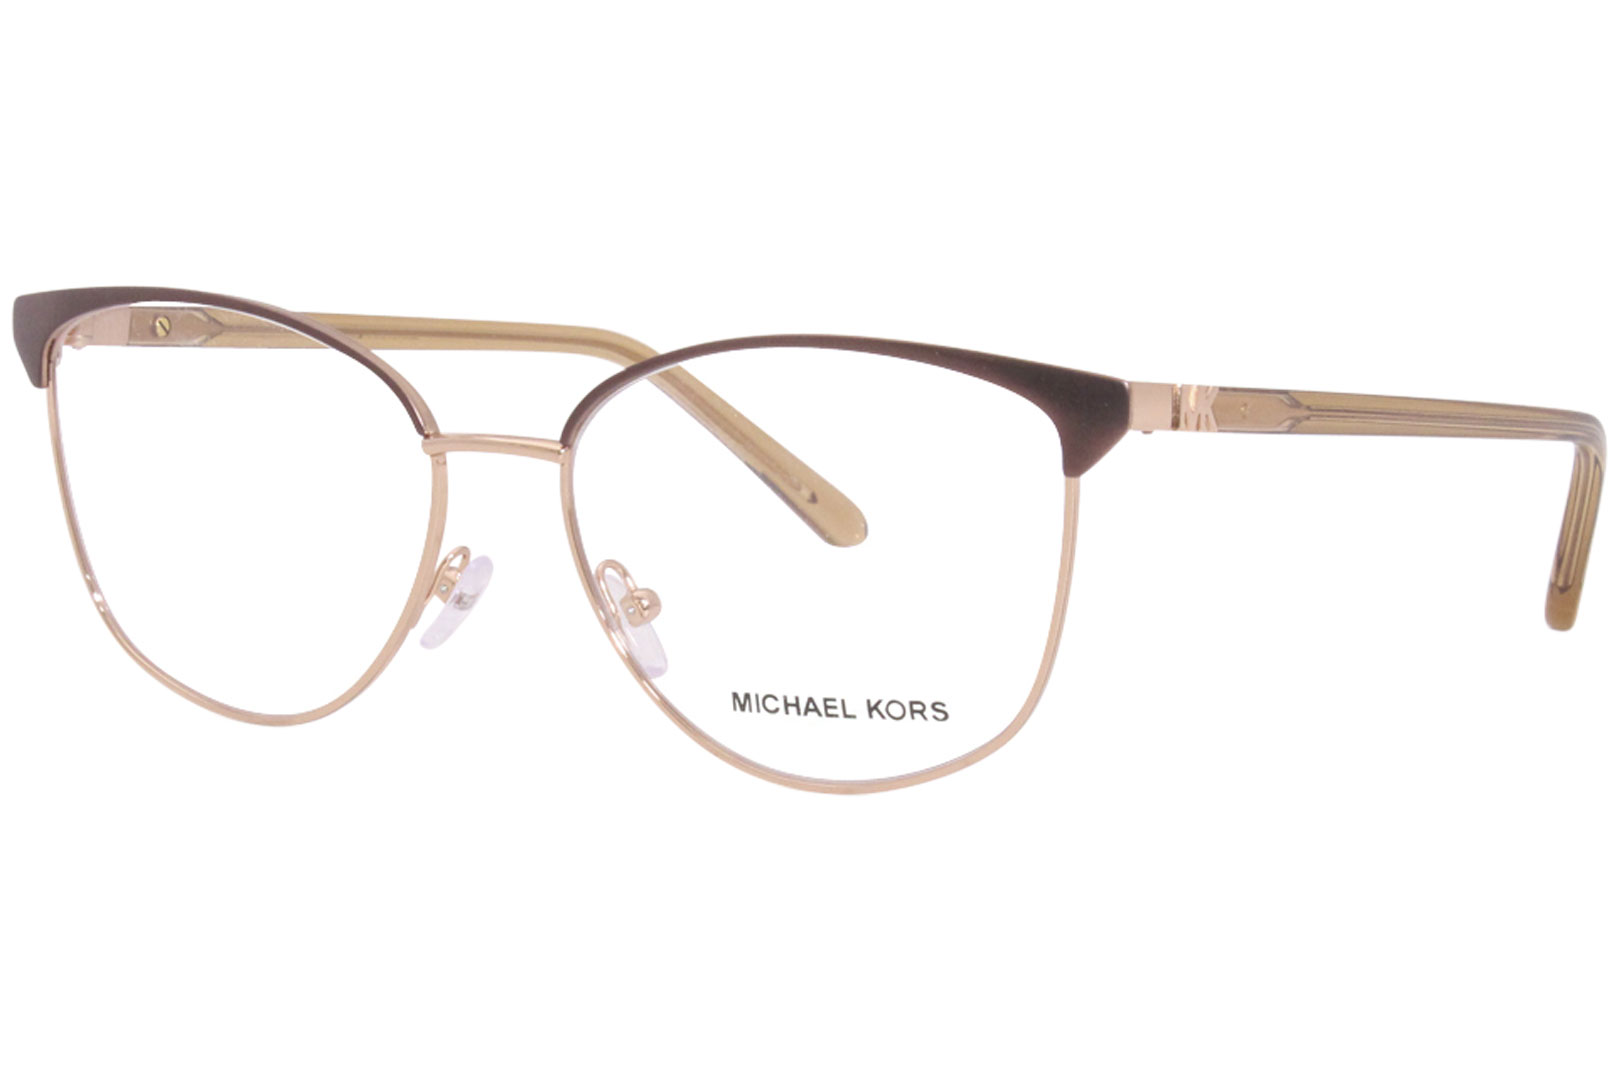 Michael Kors Fernie MK3053 Eyeglasses Frame Women's Full Rim Cat Eye ...